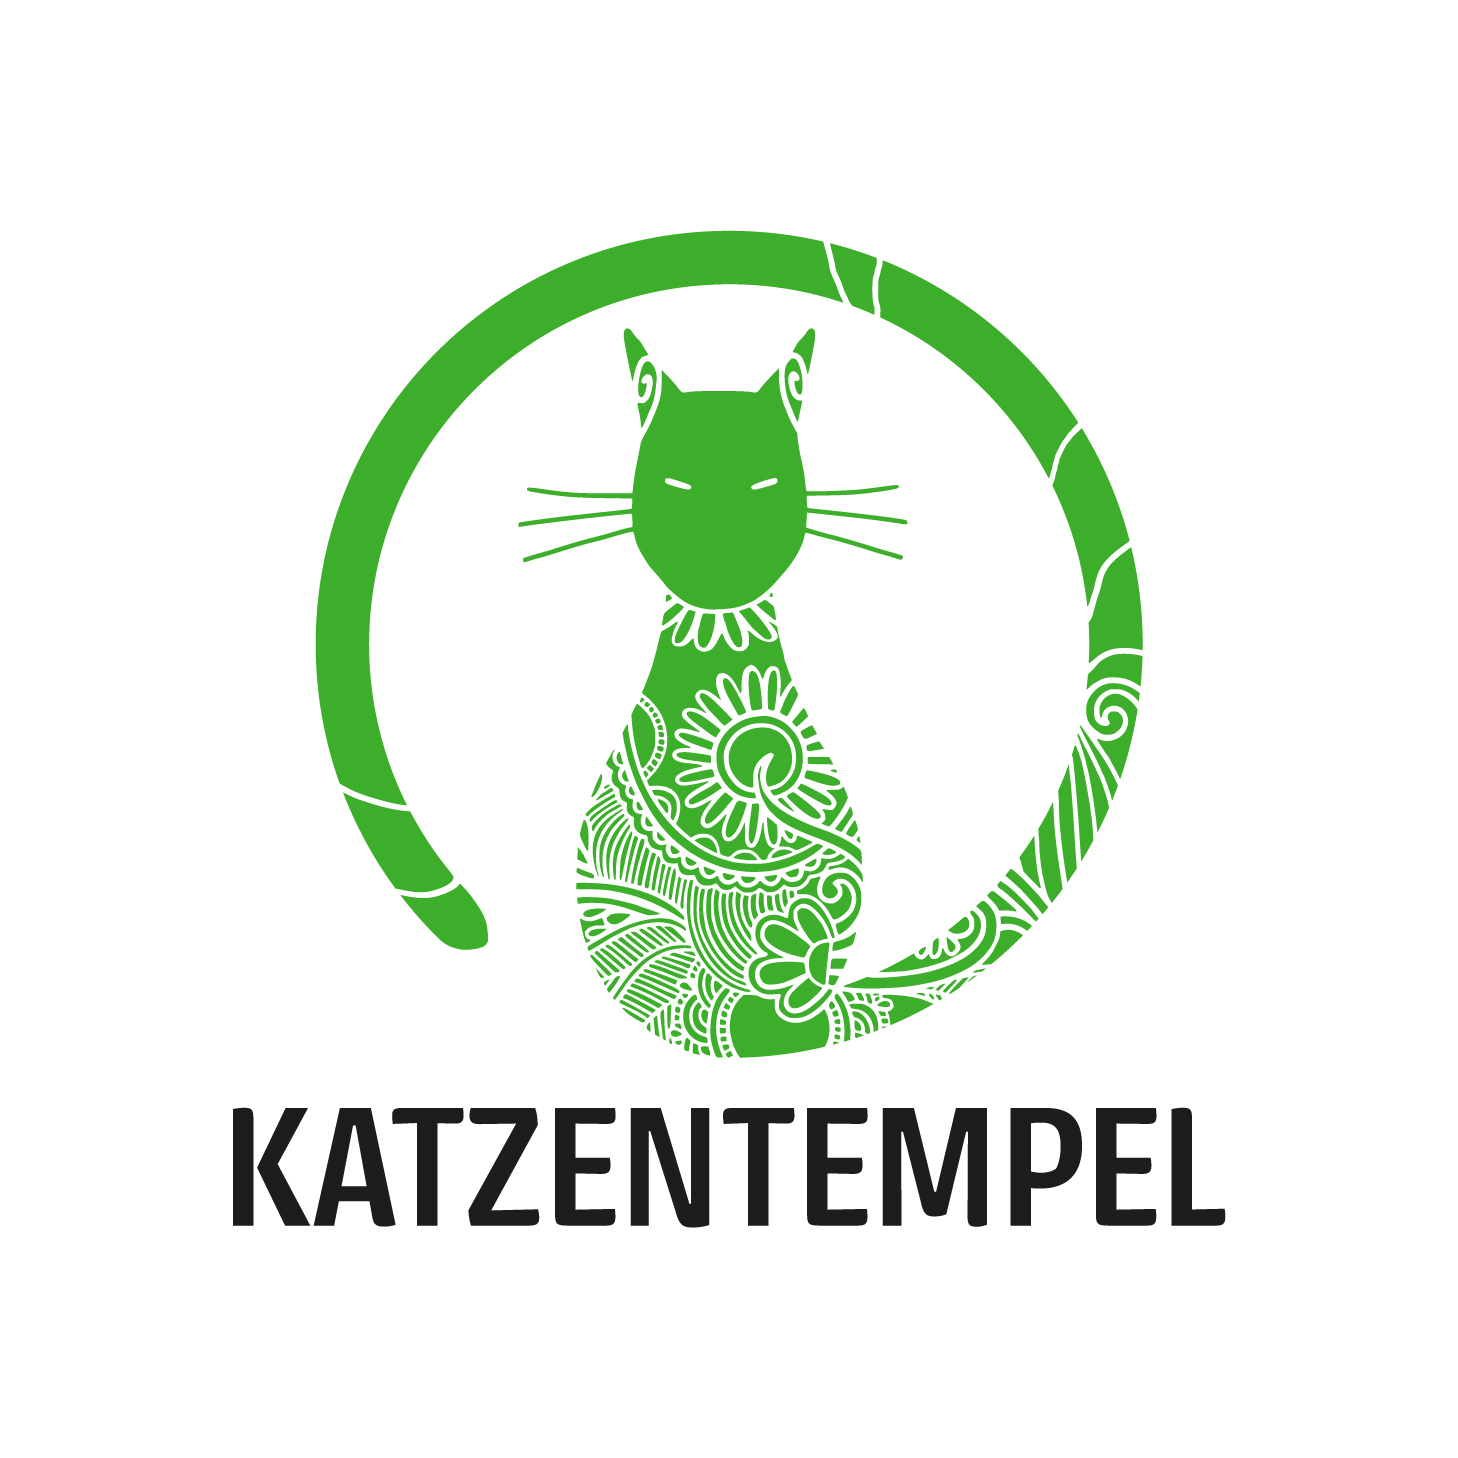 Logo von Katzentempel Rosenheim